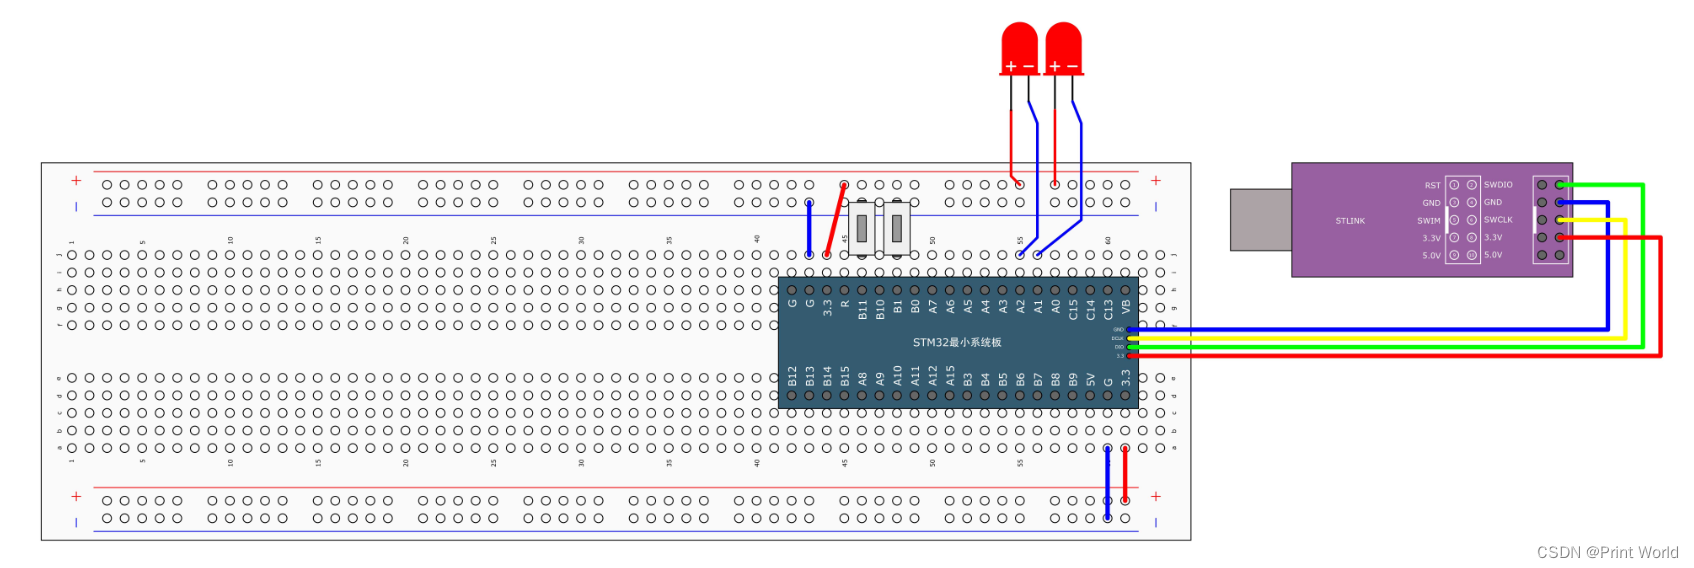 【STM32】STM32学习笔记-按键控制LED 光敏传感器控制蜂鸣器(08)